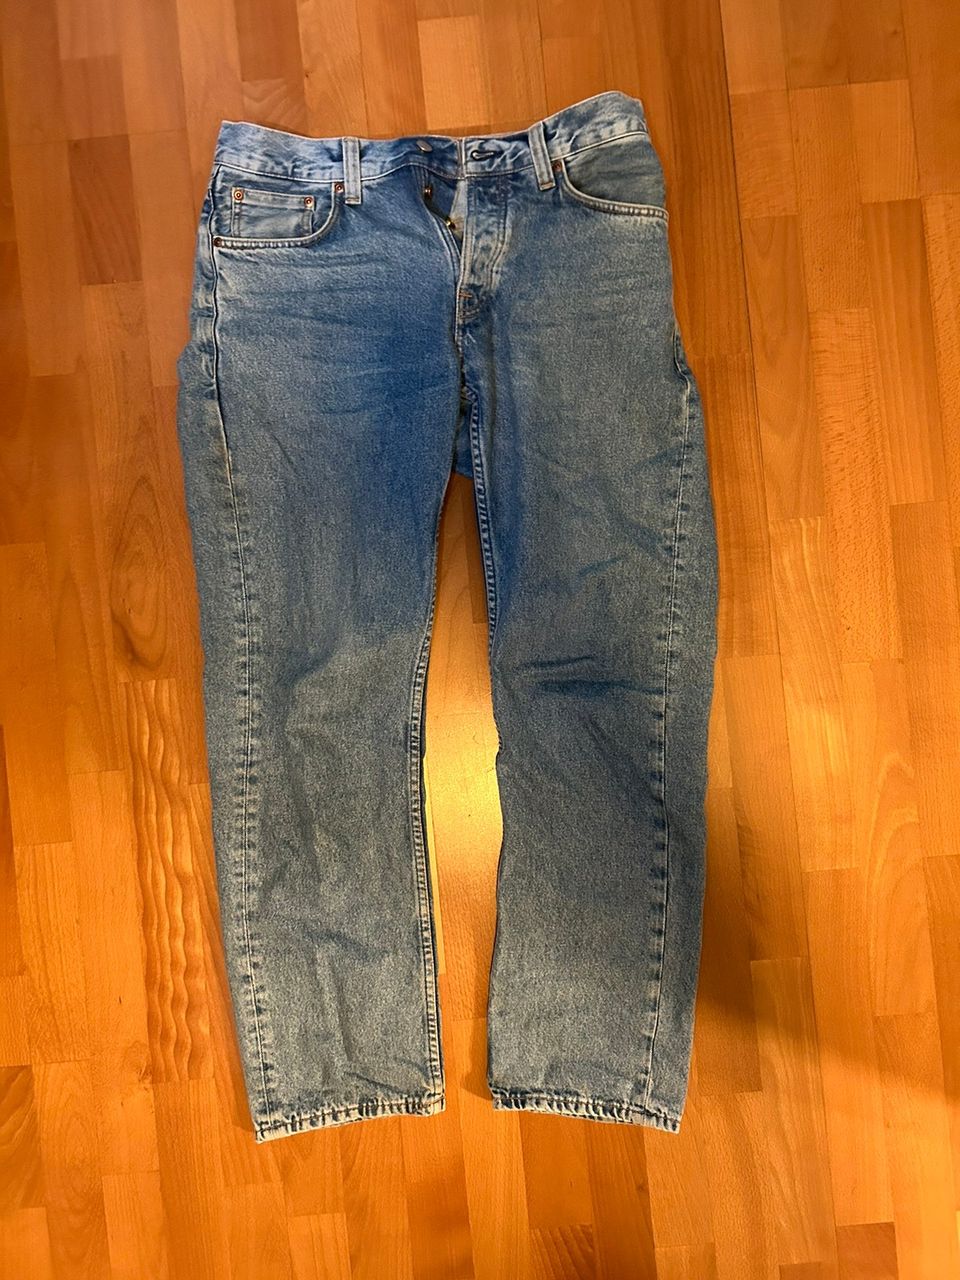 Nudie jeans rad rufus 30x30